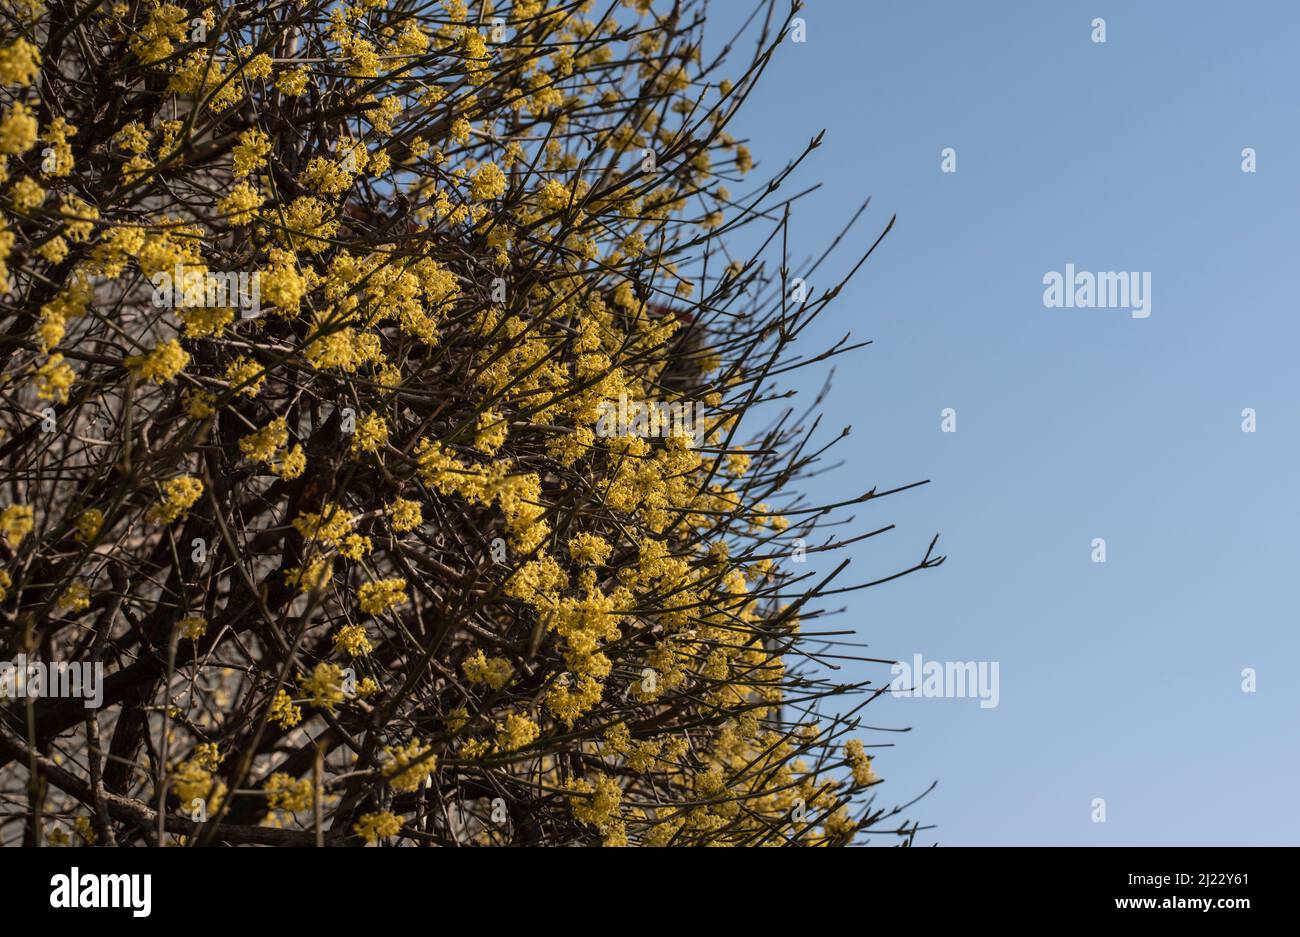 las ramitas sin hojas de una cereza cornalina con flores amarillas en un día soleado con cielo azul claro Foto de stock